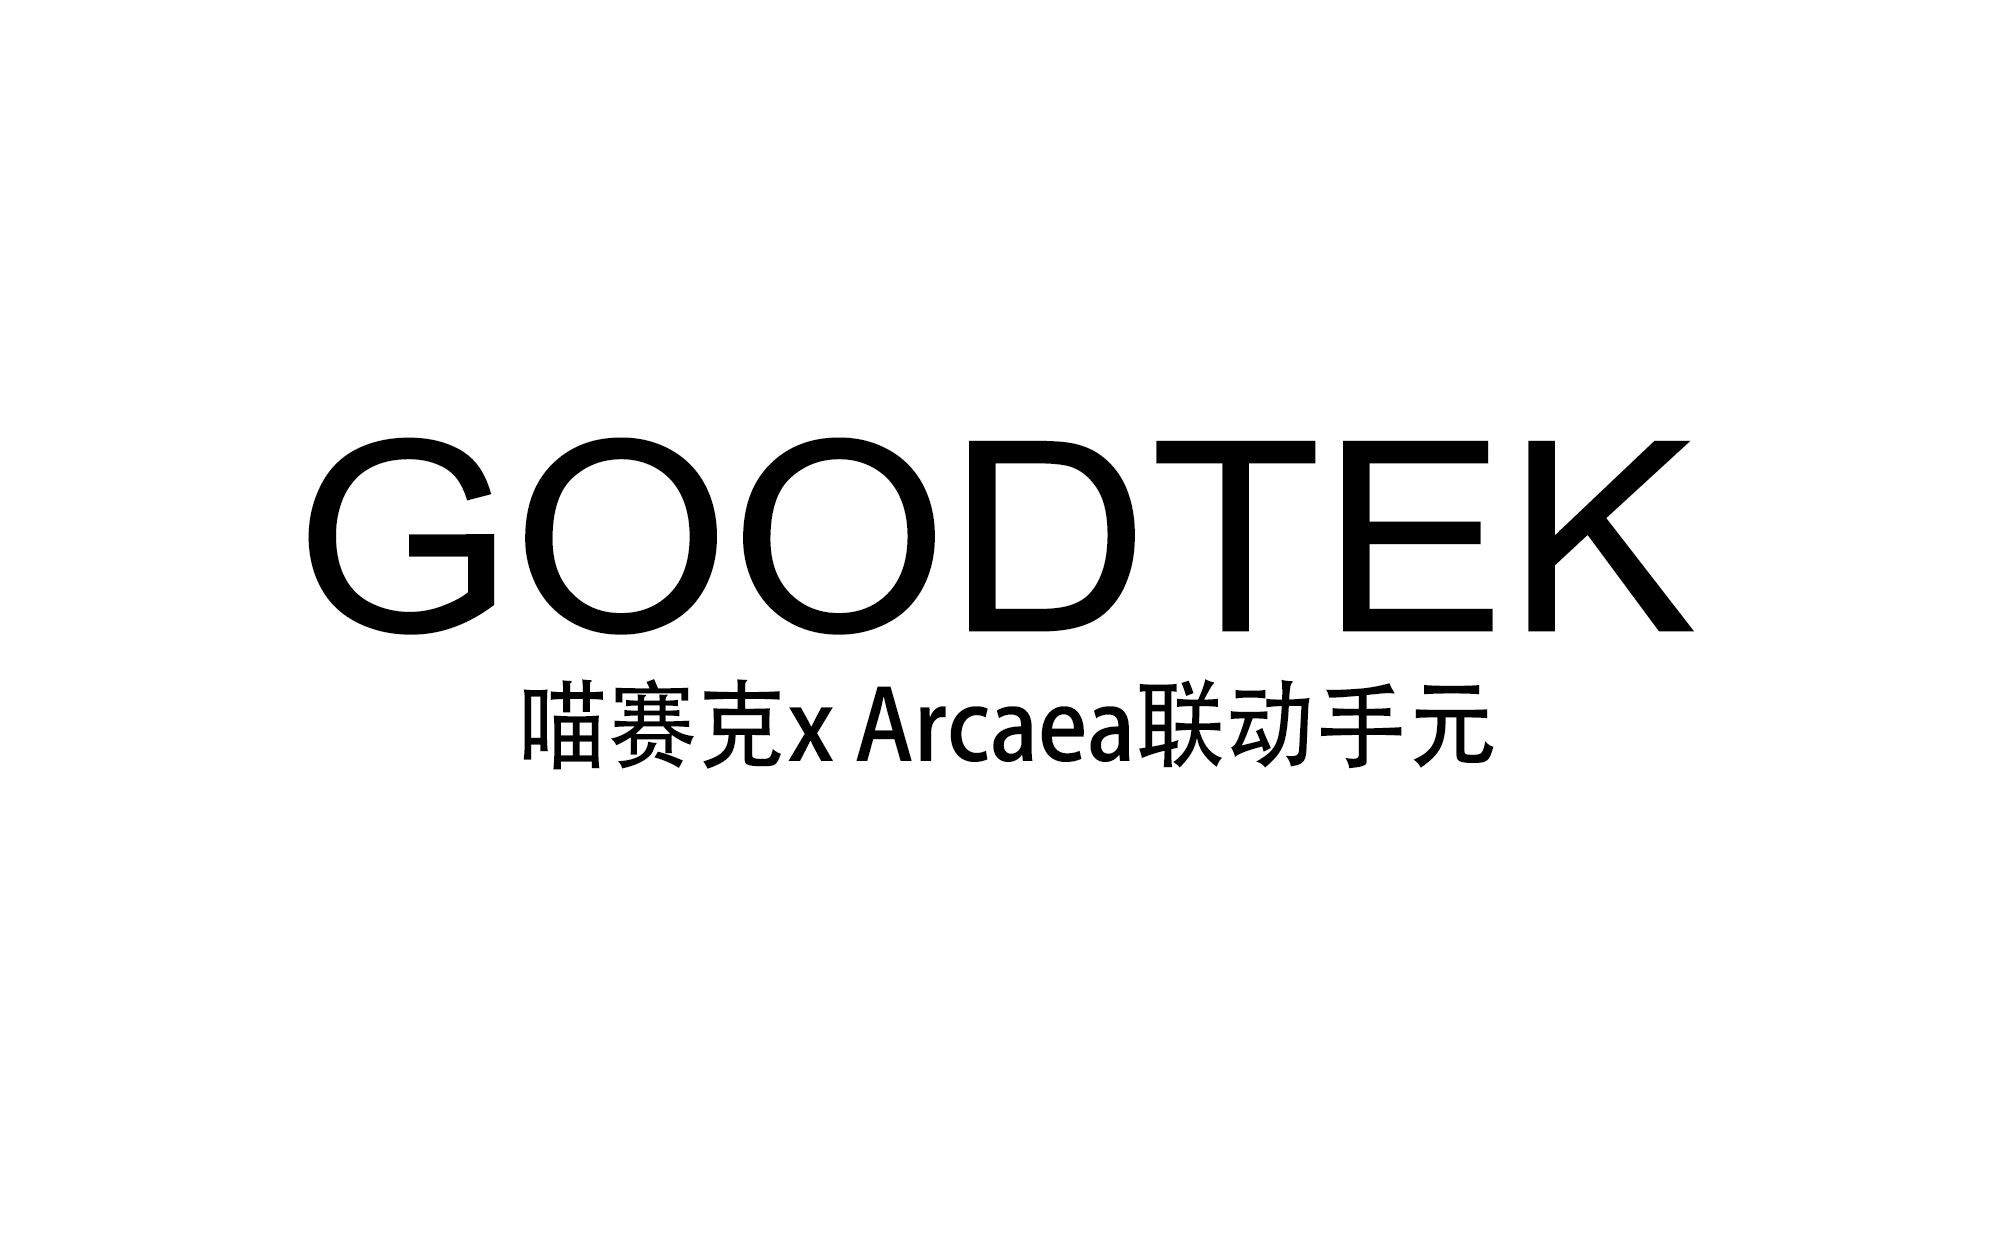 【如此联动】联动计划第一弹:goodtek in 喵塞克&arcaea